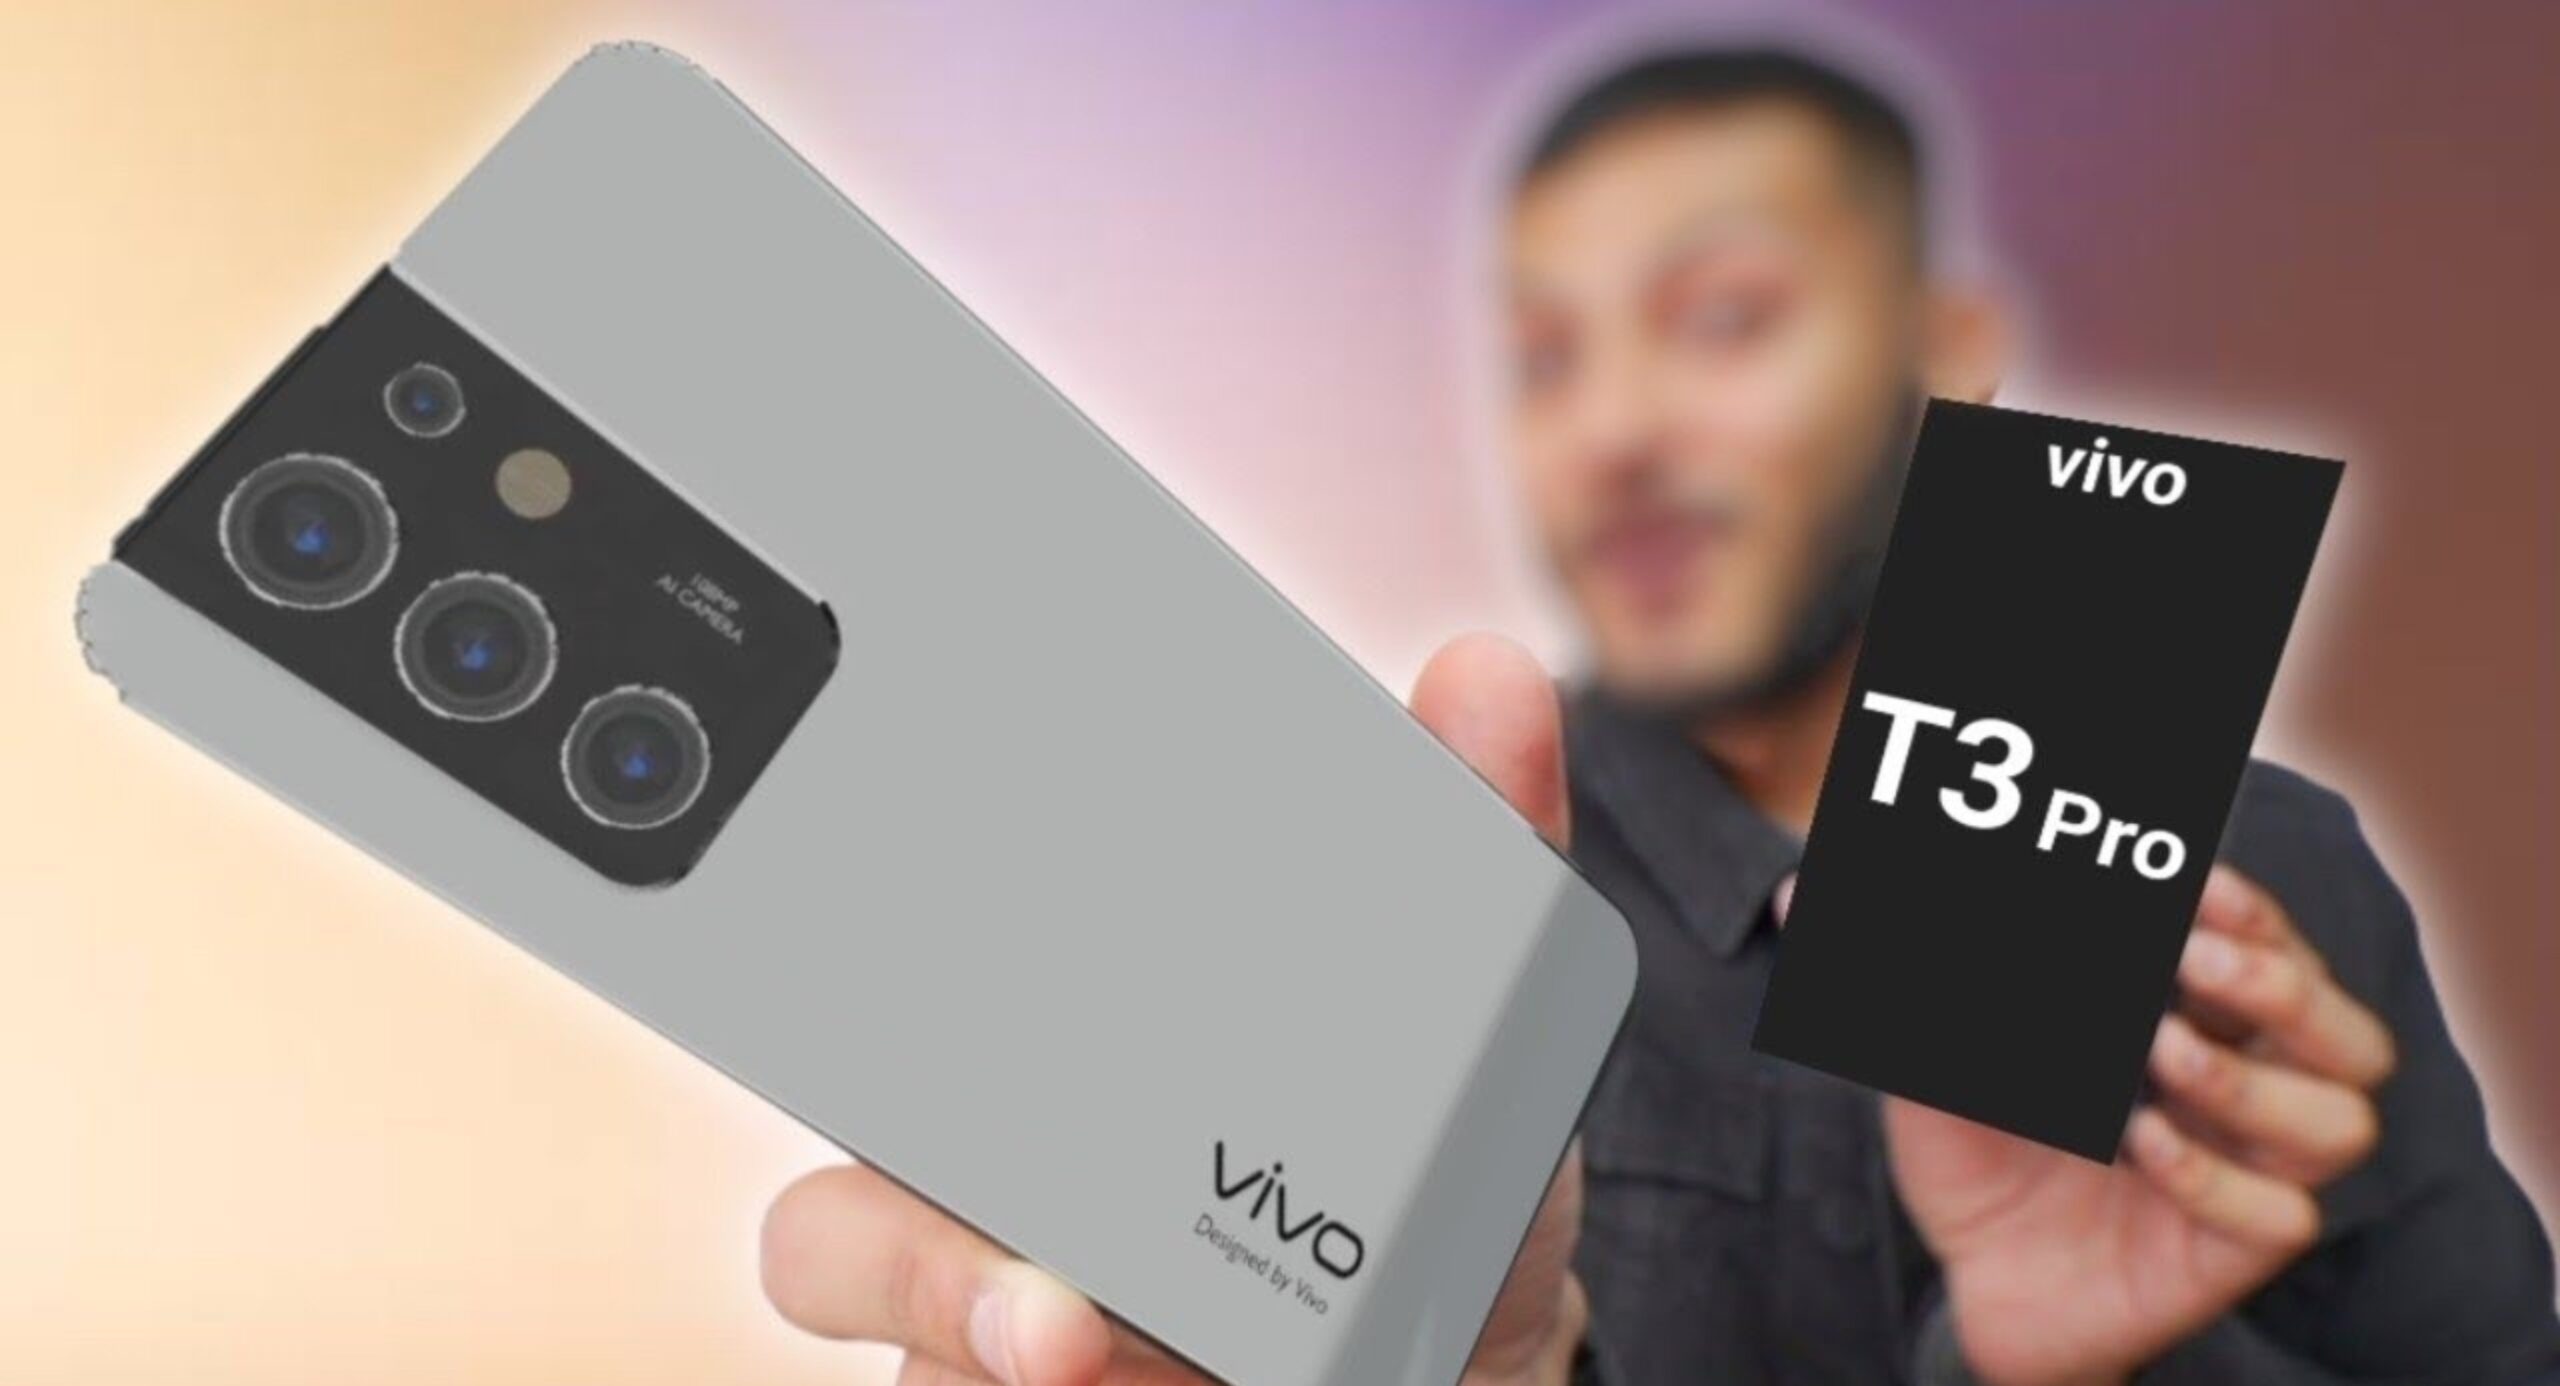 Vivo T3 Pro New Smartphone